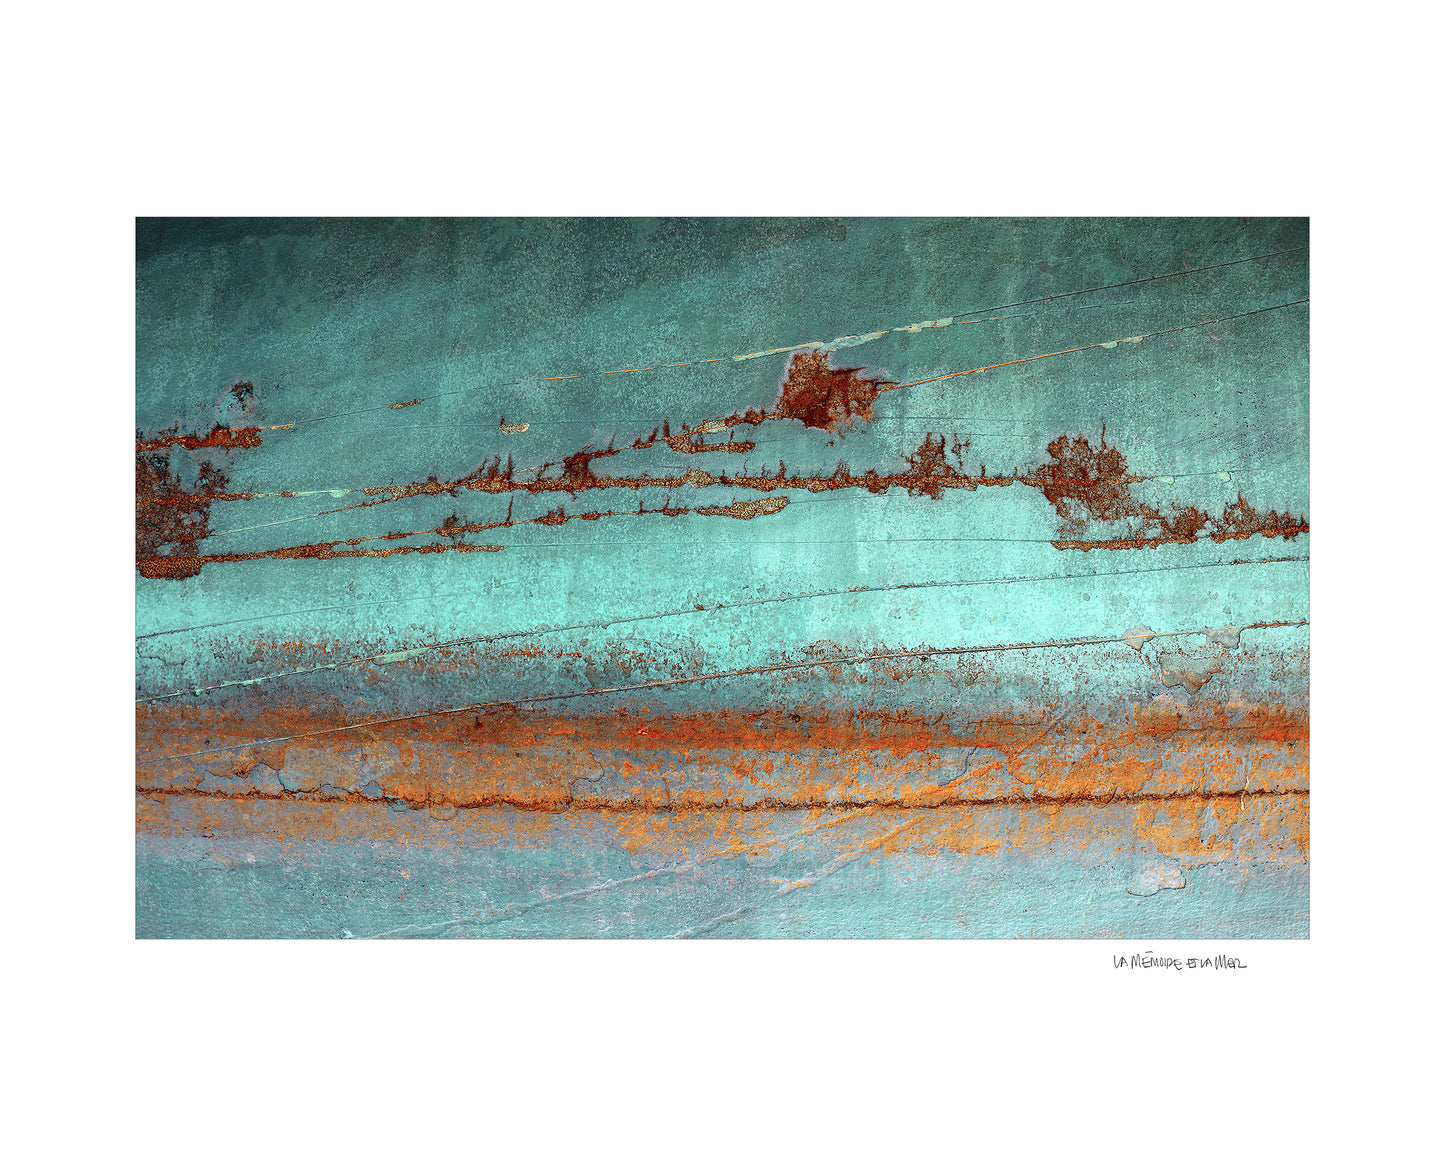 Œuvre d’art photographique d’une coque de bateau turquoise et rouille de Julien Livernois, la mémoire et la mer